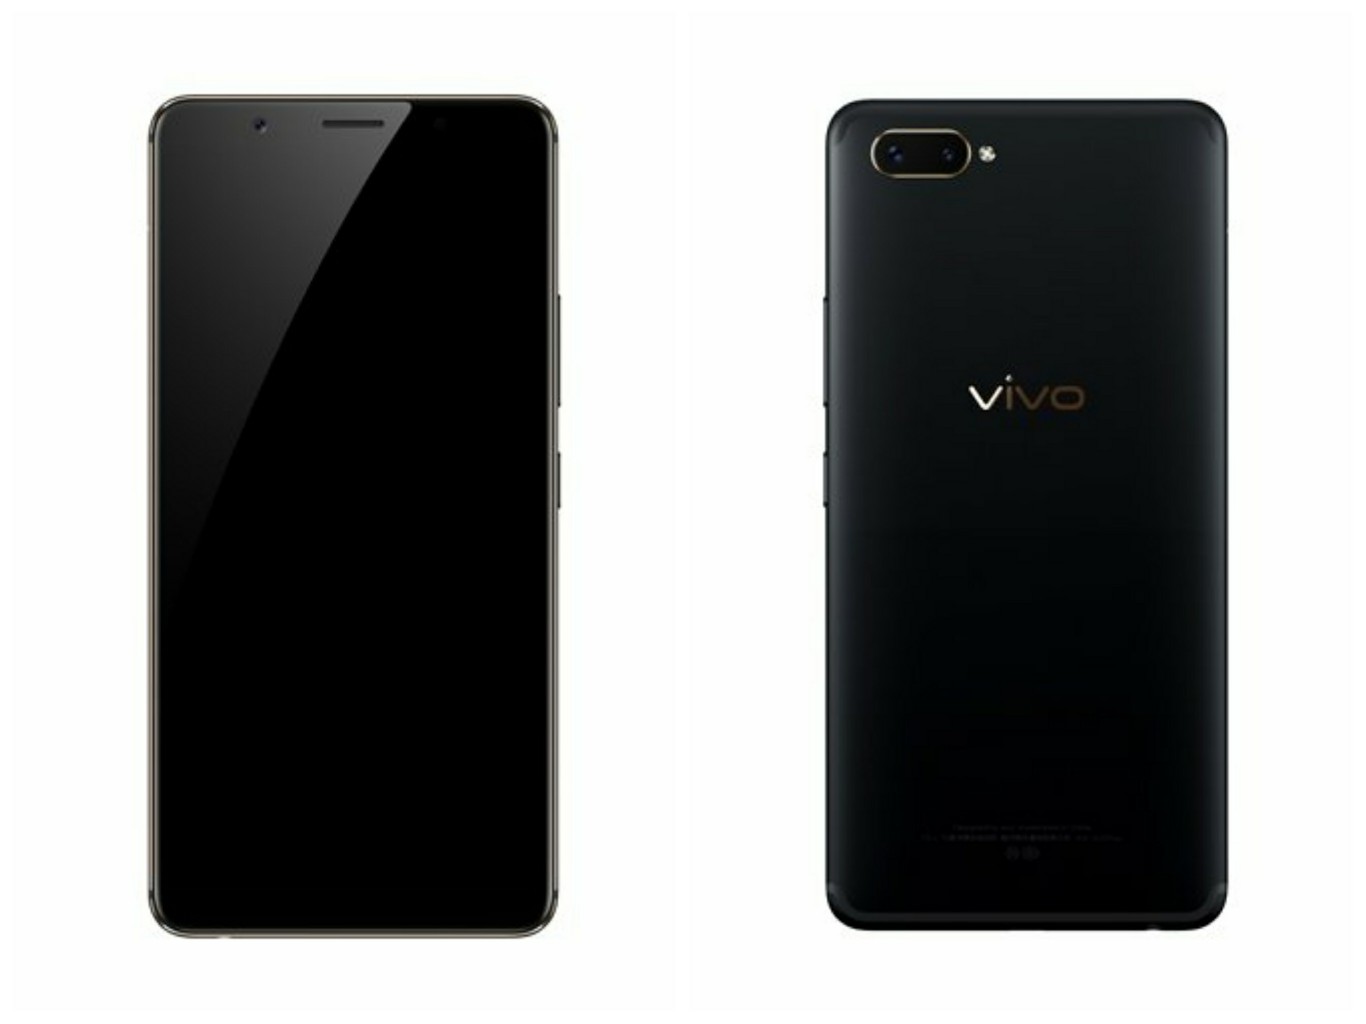 Vivo X20 Plus